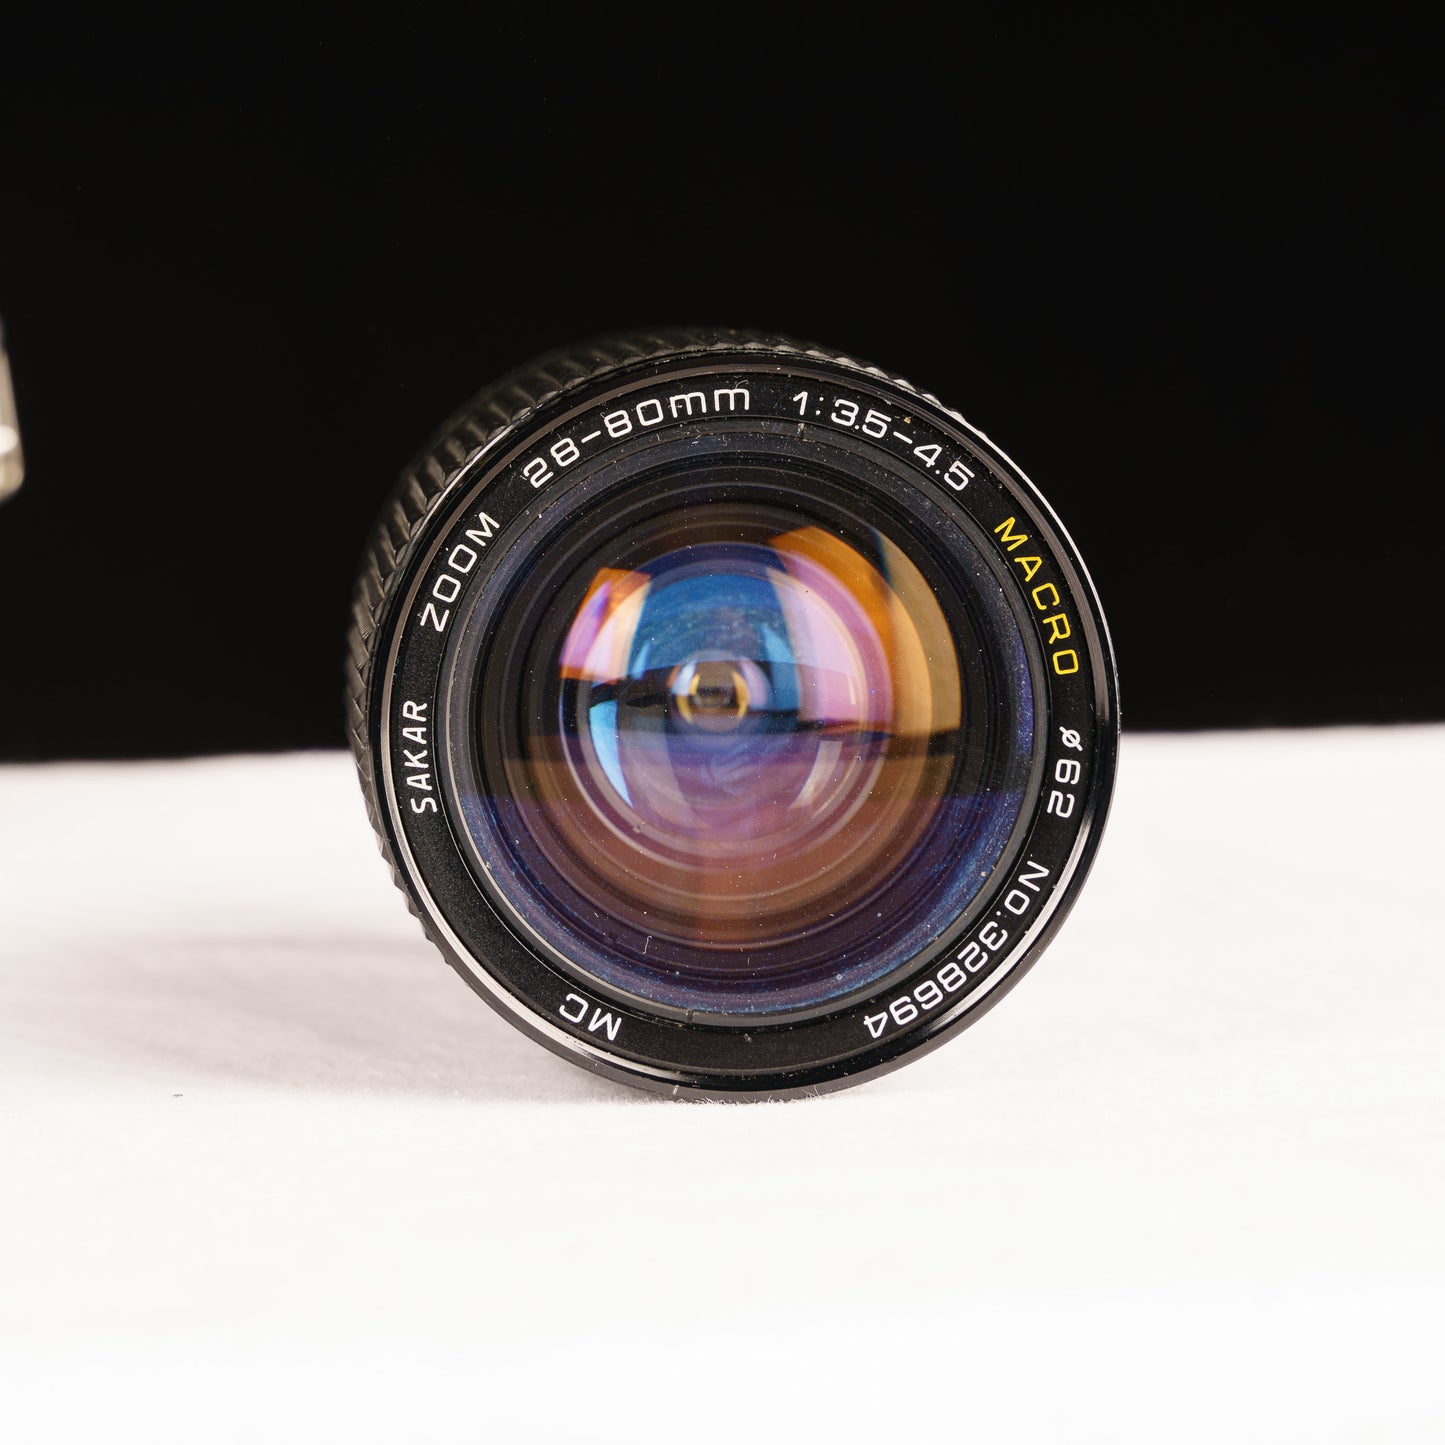 Canon AE-1 35mm Film SLR with Sakar Macro 28-80mm f/3.5-4.5 Lens